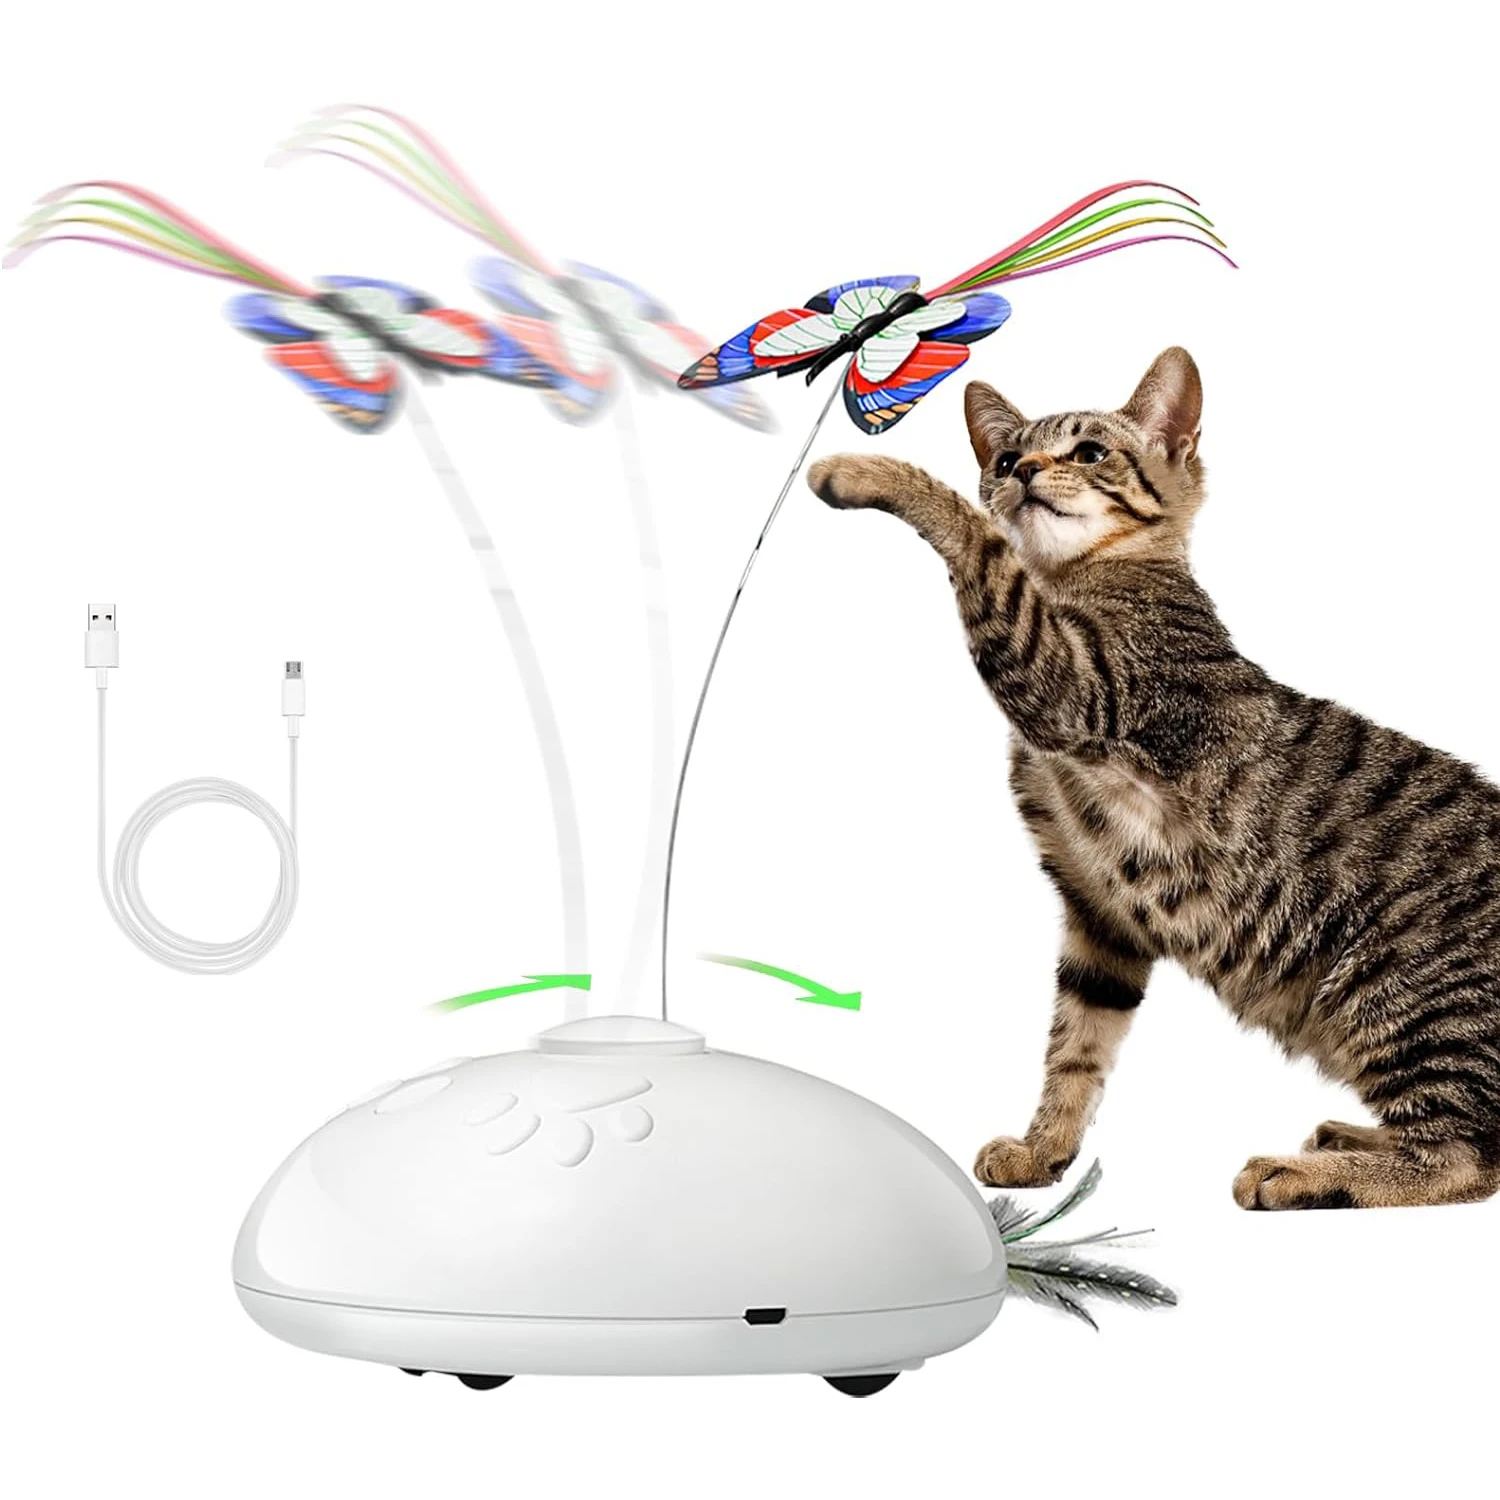 

Автоматическая игрушка для кошек в виде бабочки, интерактивная электронная игрушка для кошек 3 в 1, движущиеся игрушки для кошек, птичье Искусственное перо, игрушечная палочка для кошек